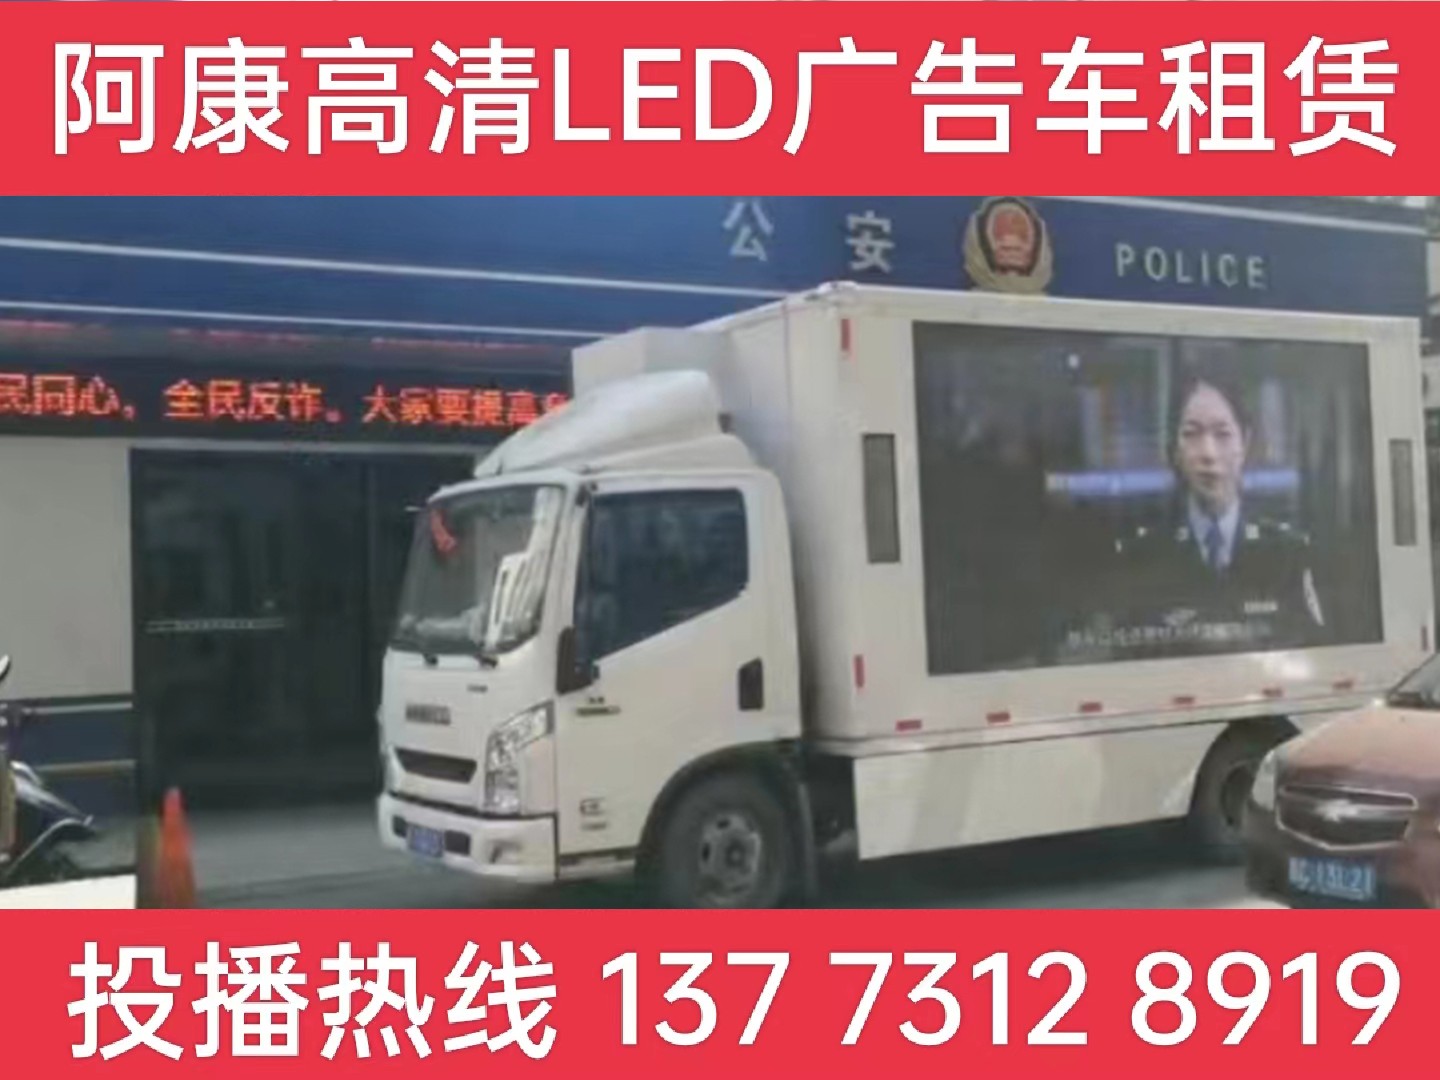 海宁LED广告车租赁-反诈宣传